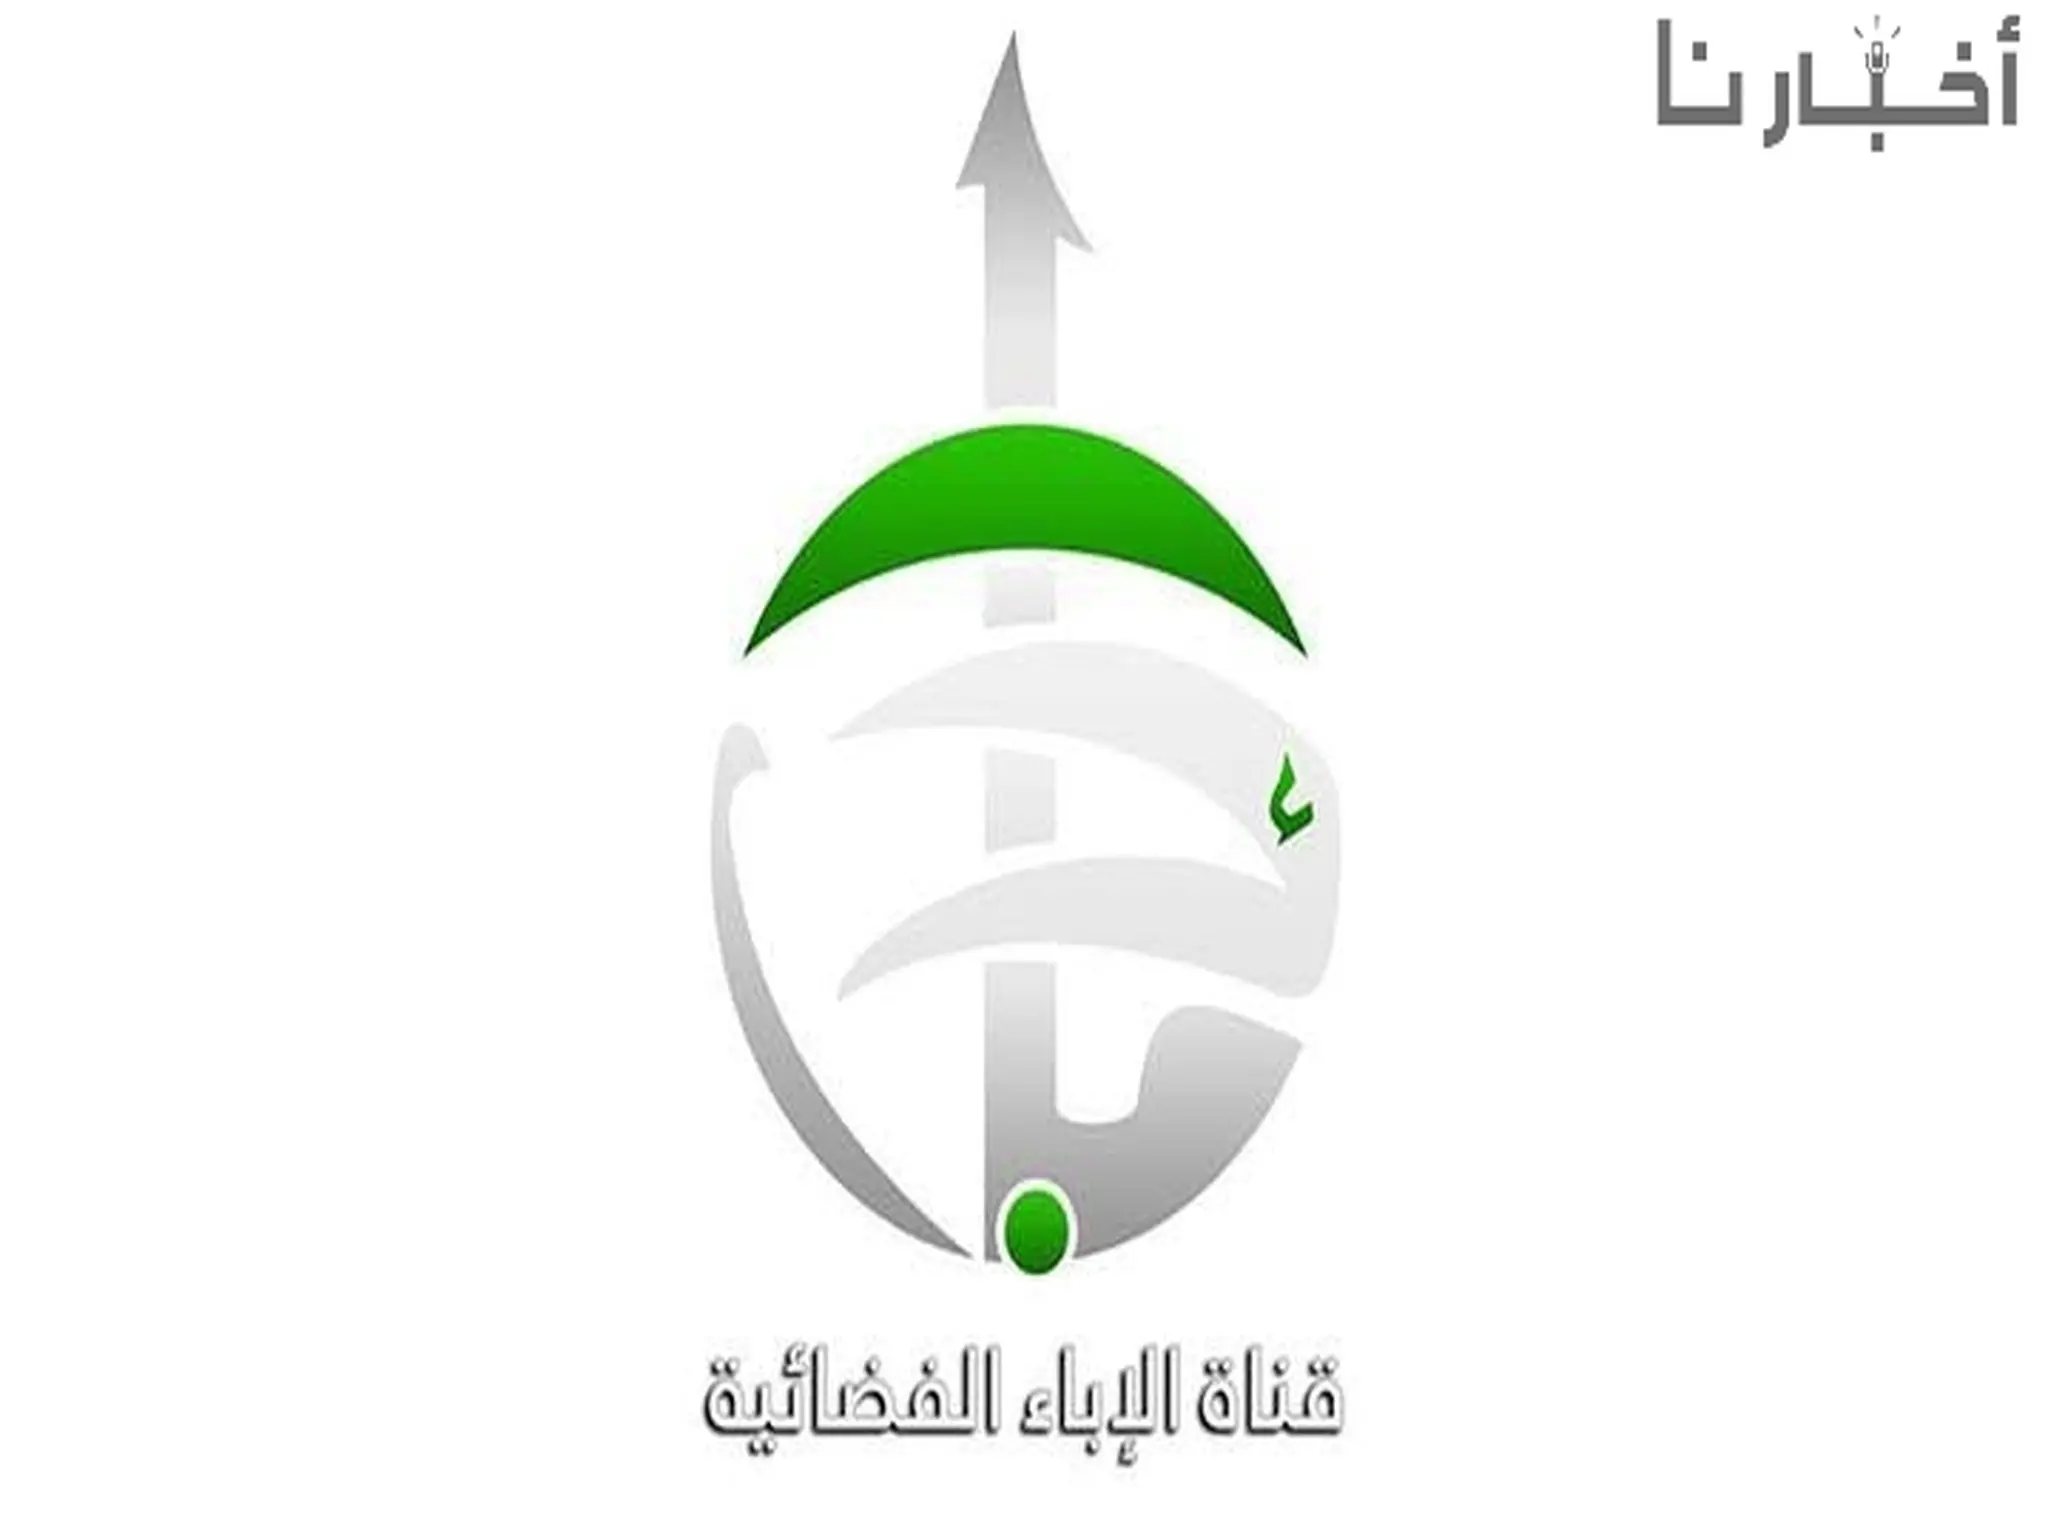 استقبل الآن.. تردد قناة الإباء Al Ebaa TV الجديد عبر النايل سات